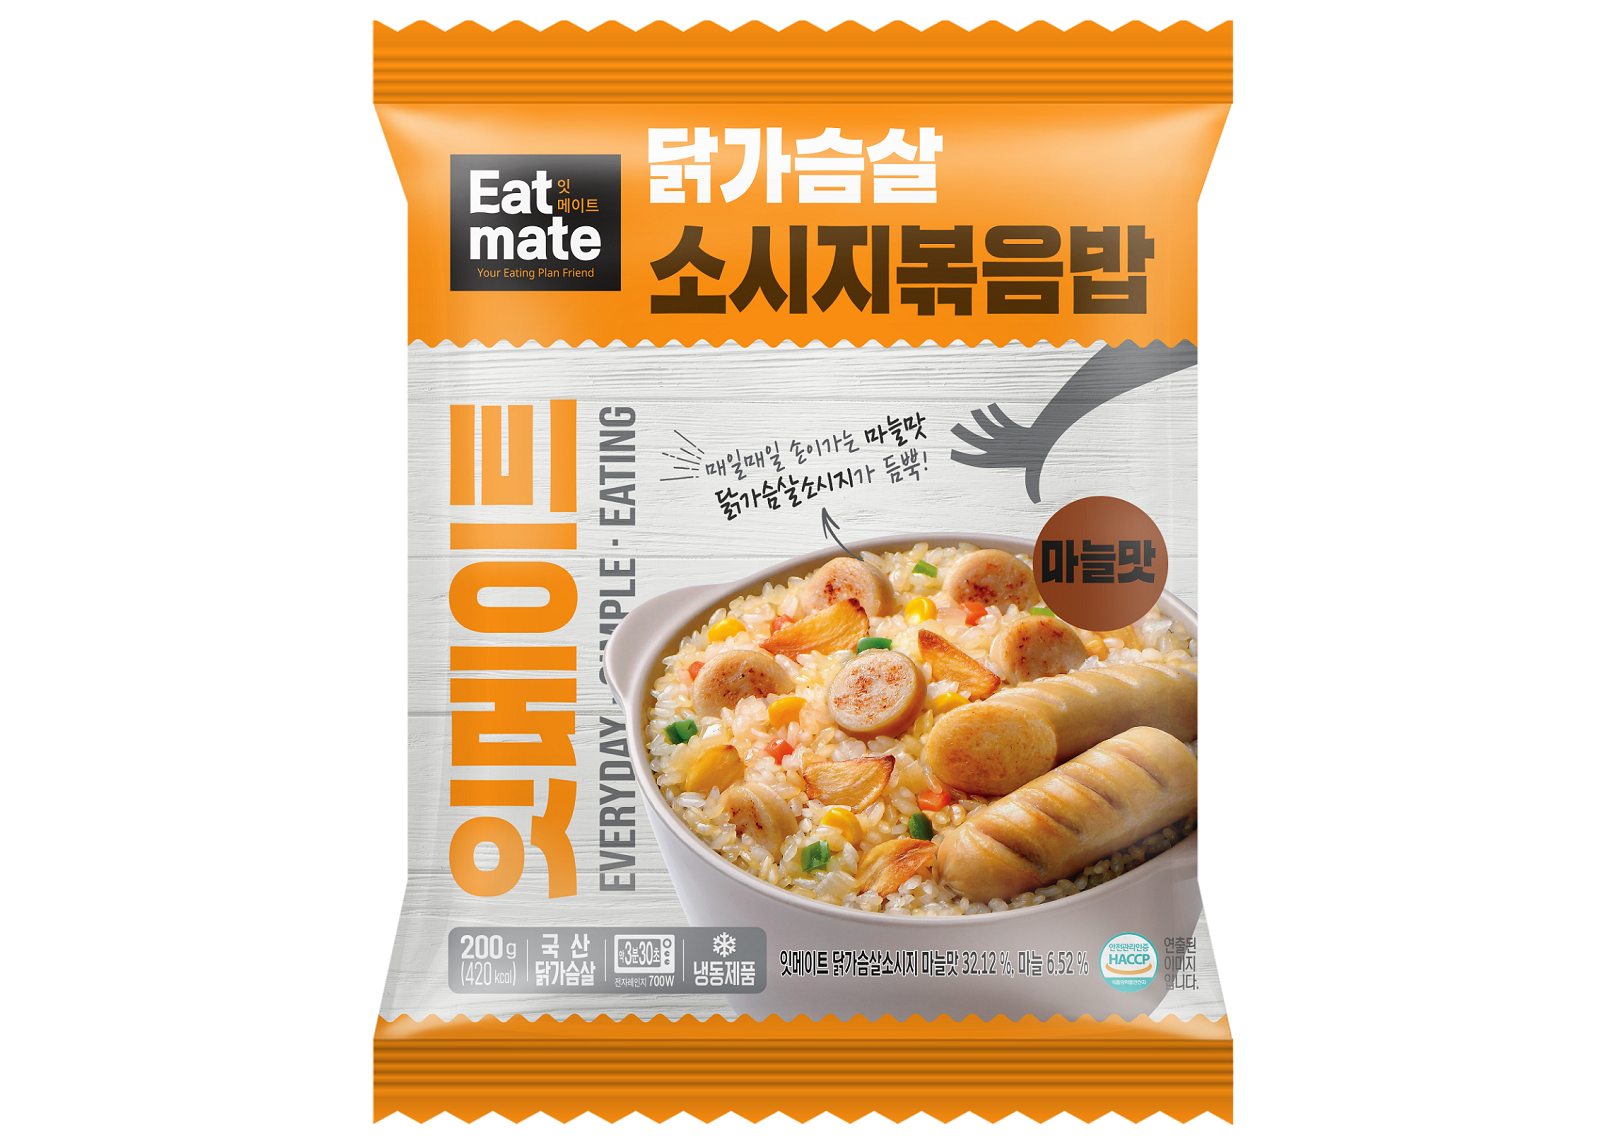 EATMATE 營養炒飯拼雞胸肉腸(蒜味) - RankingDak hong kong